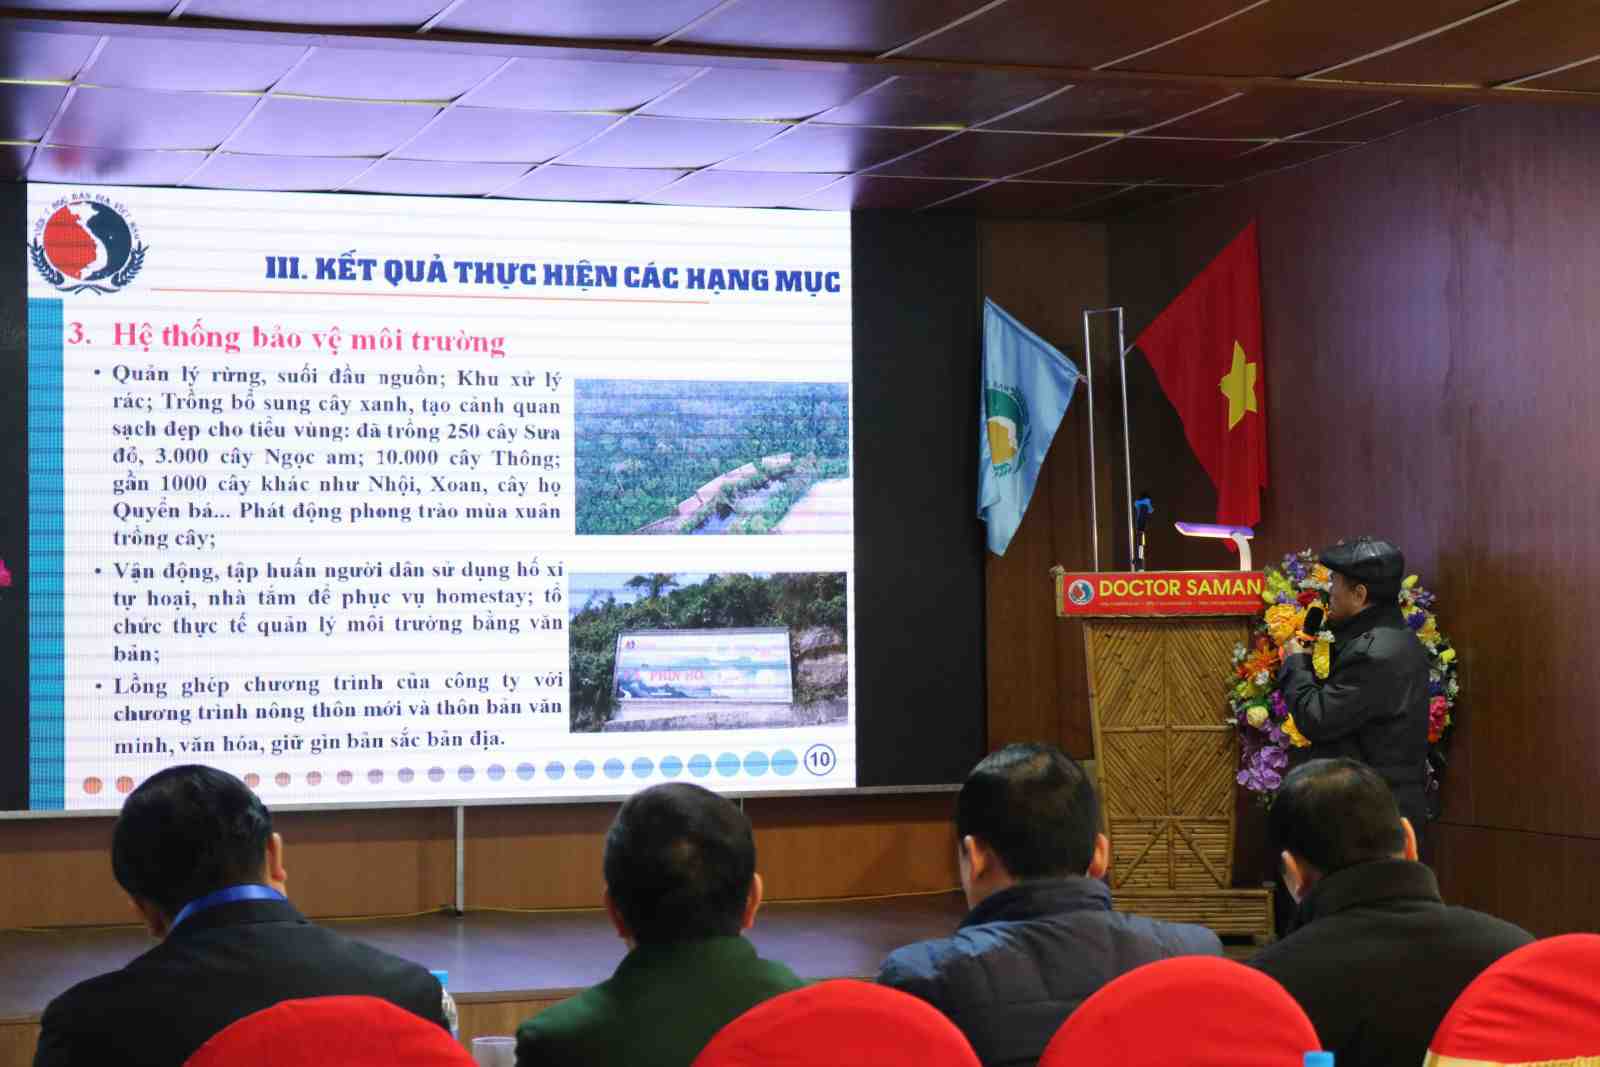 Bs Hoàng Sầm – Chủ tịch Hội đồng Công ty TNHH Y học bản địa Việt Nam báo cáo tổng kết kết quả việc thực hiện giai đoạn một của dự án Tả Phìn Hồ